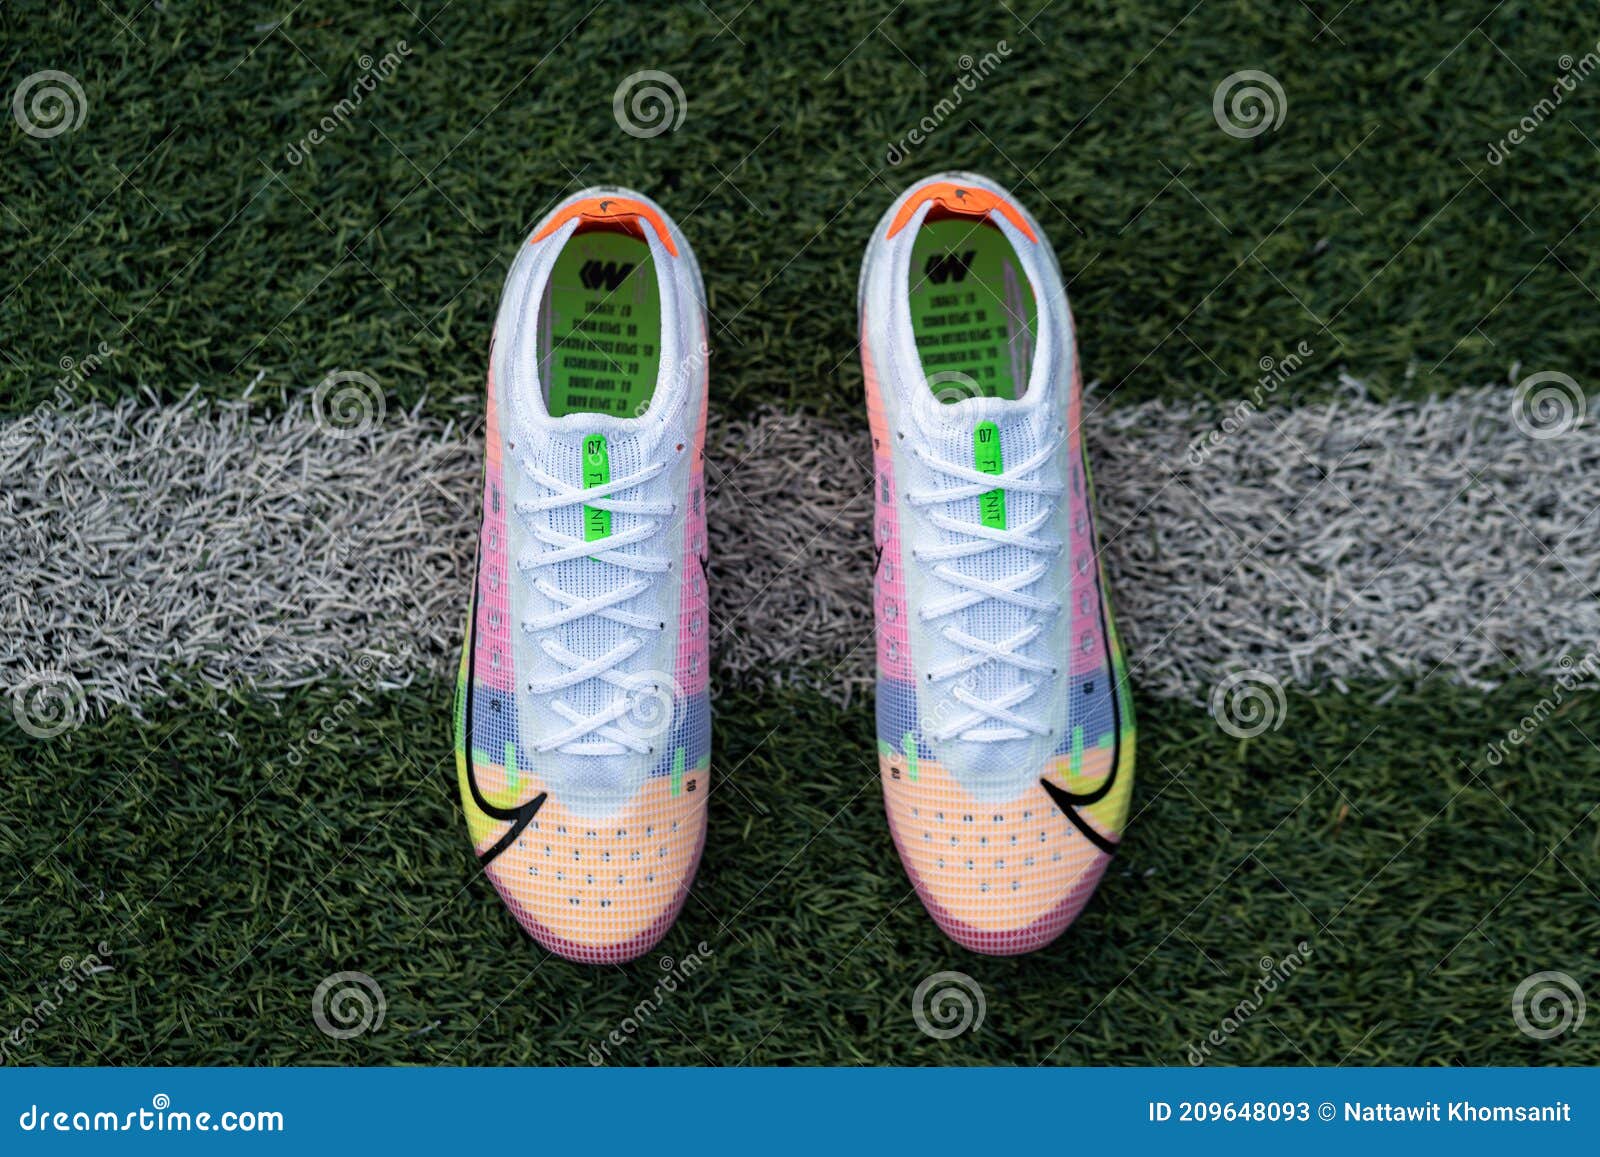 Nike Mercurial Vapor 14 Nuevo Zapato De Futbol Nike. Foto de archivo  editorial - Imagen de lanzamiento, calzado: 209648093